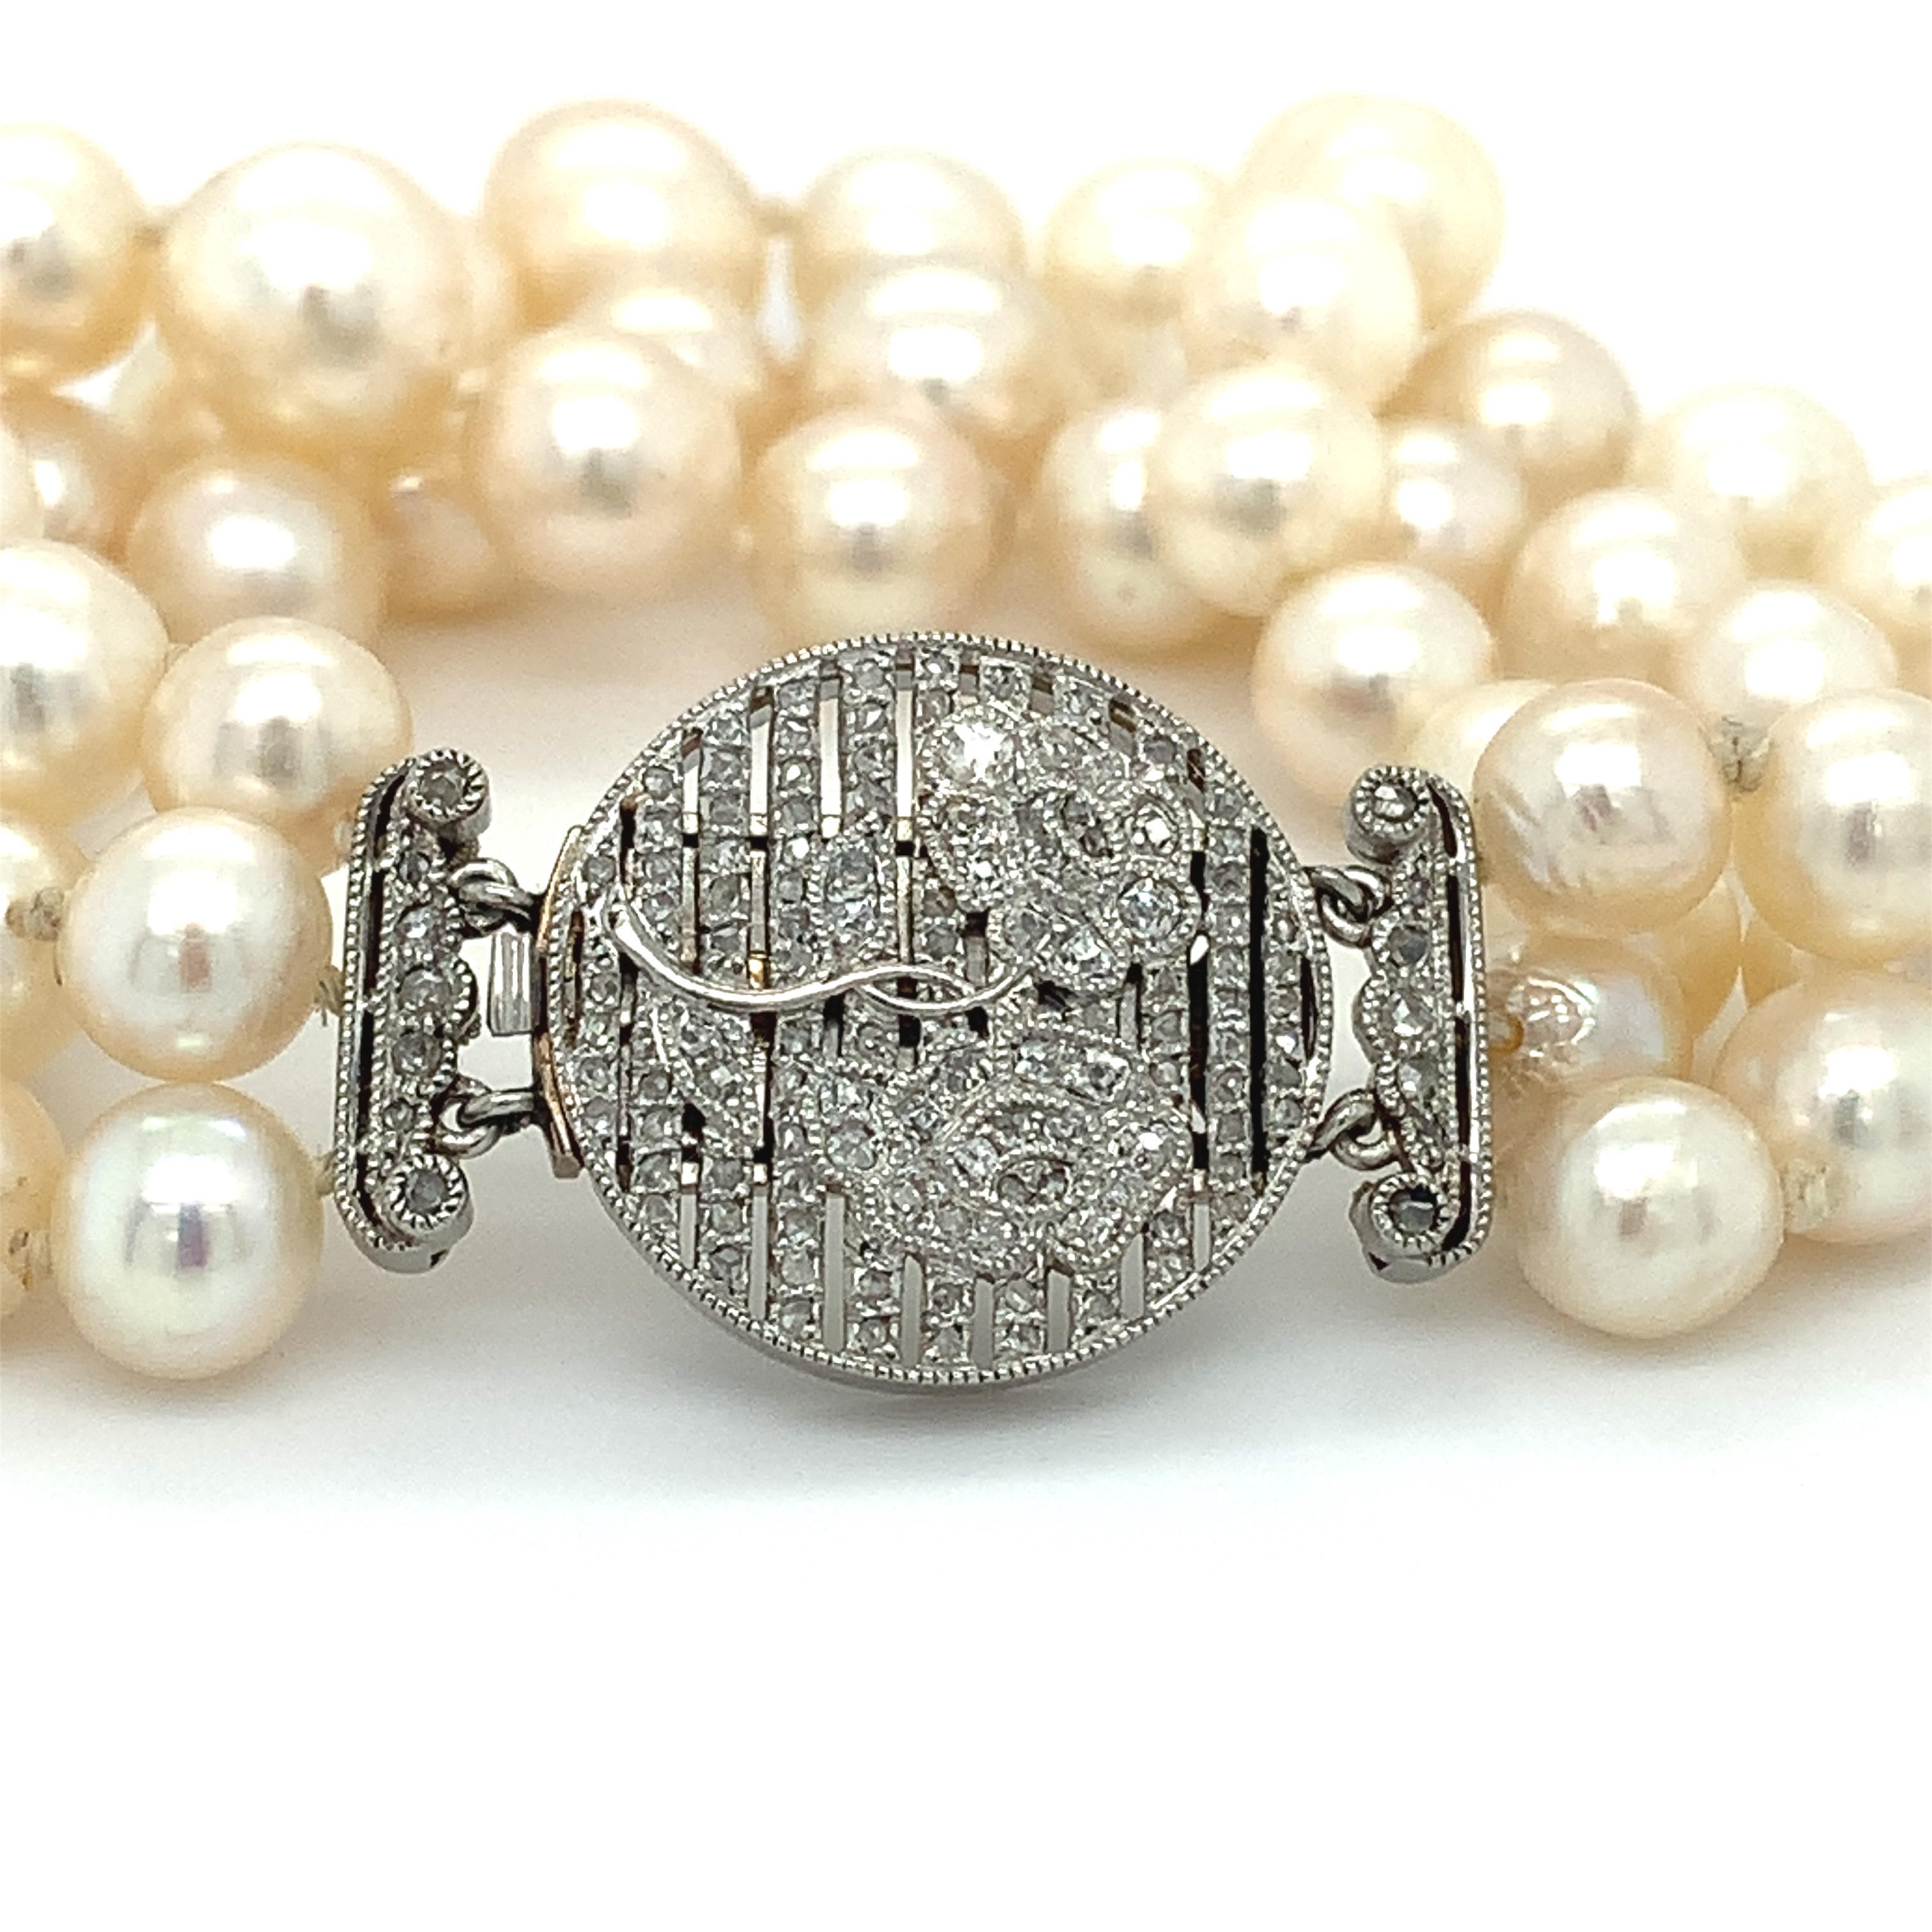 Bracelet triple brin en platine, diamants et perles de style Art déco.
Composé d'un bracelet triple brin en diamants ronds de taille brillant et perles montés sur fermoir en platine.
La largeur des perles est d'environ 7 mm.
Poids total des diamants